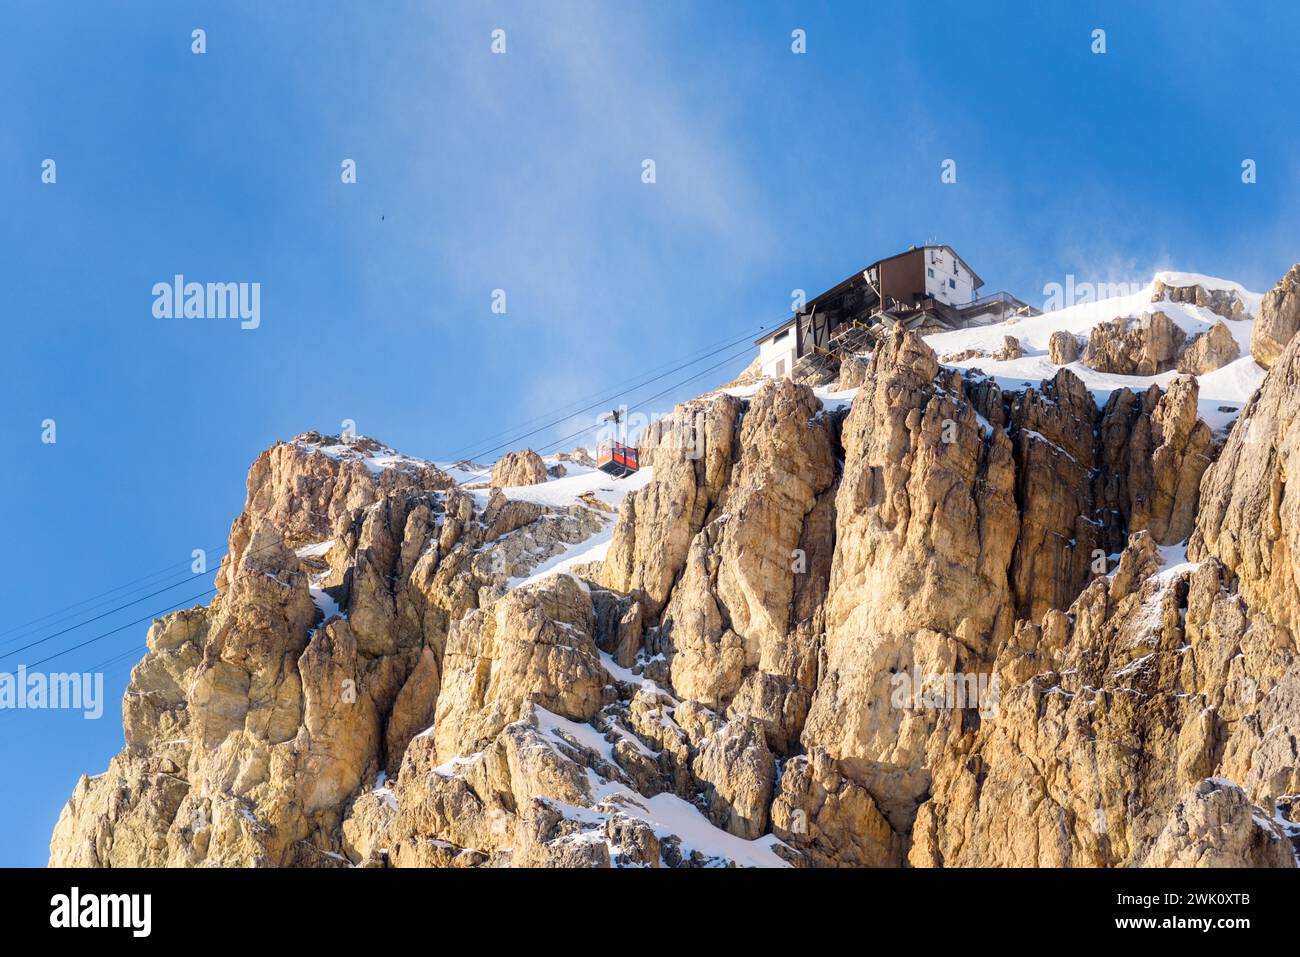 Cabina della funivia che si avvicina alla stazione superiore su una cima rocciosa innevata delle Alpi in una soleggiata giornata invernale Foto Stock